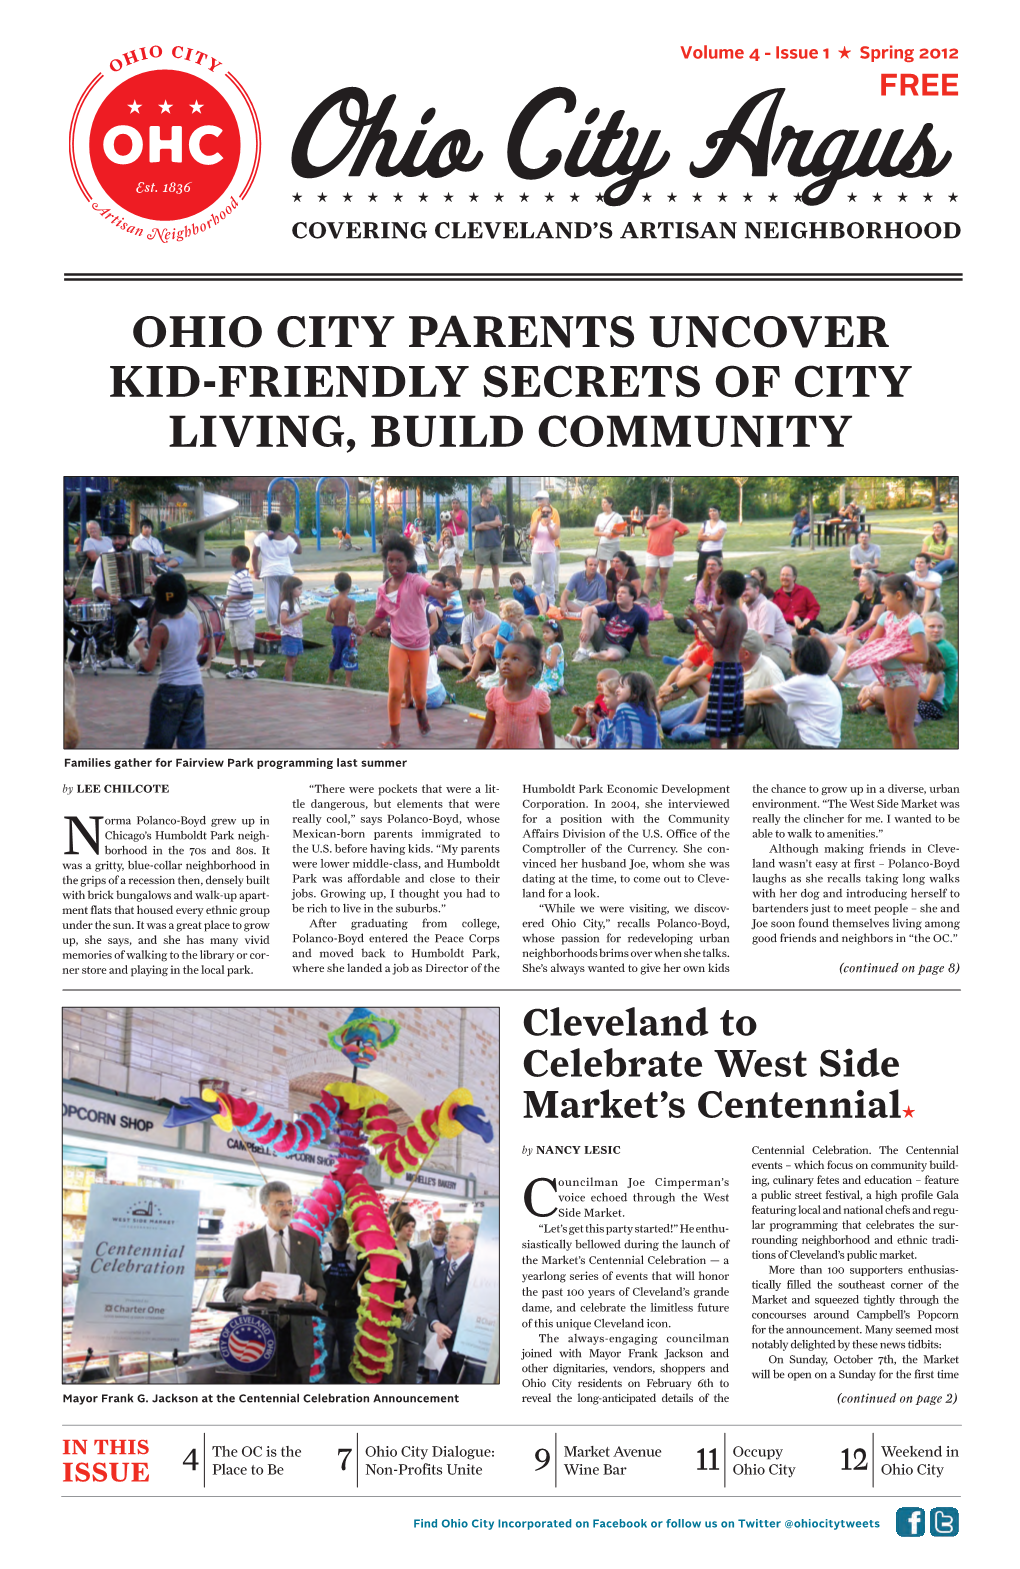 Ohio City Parents Uncover Kid-Friendly Secrets of City Living, Build Community